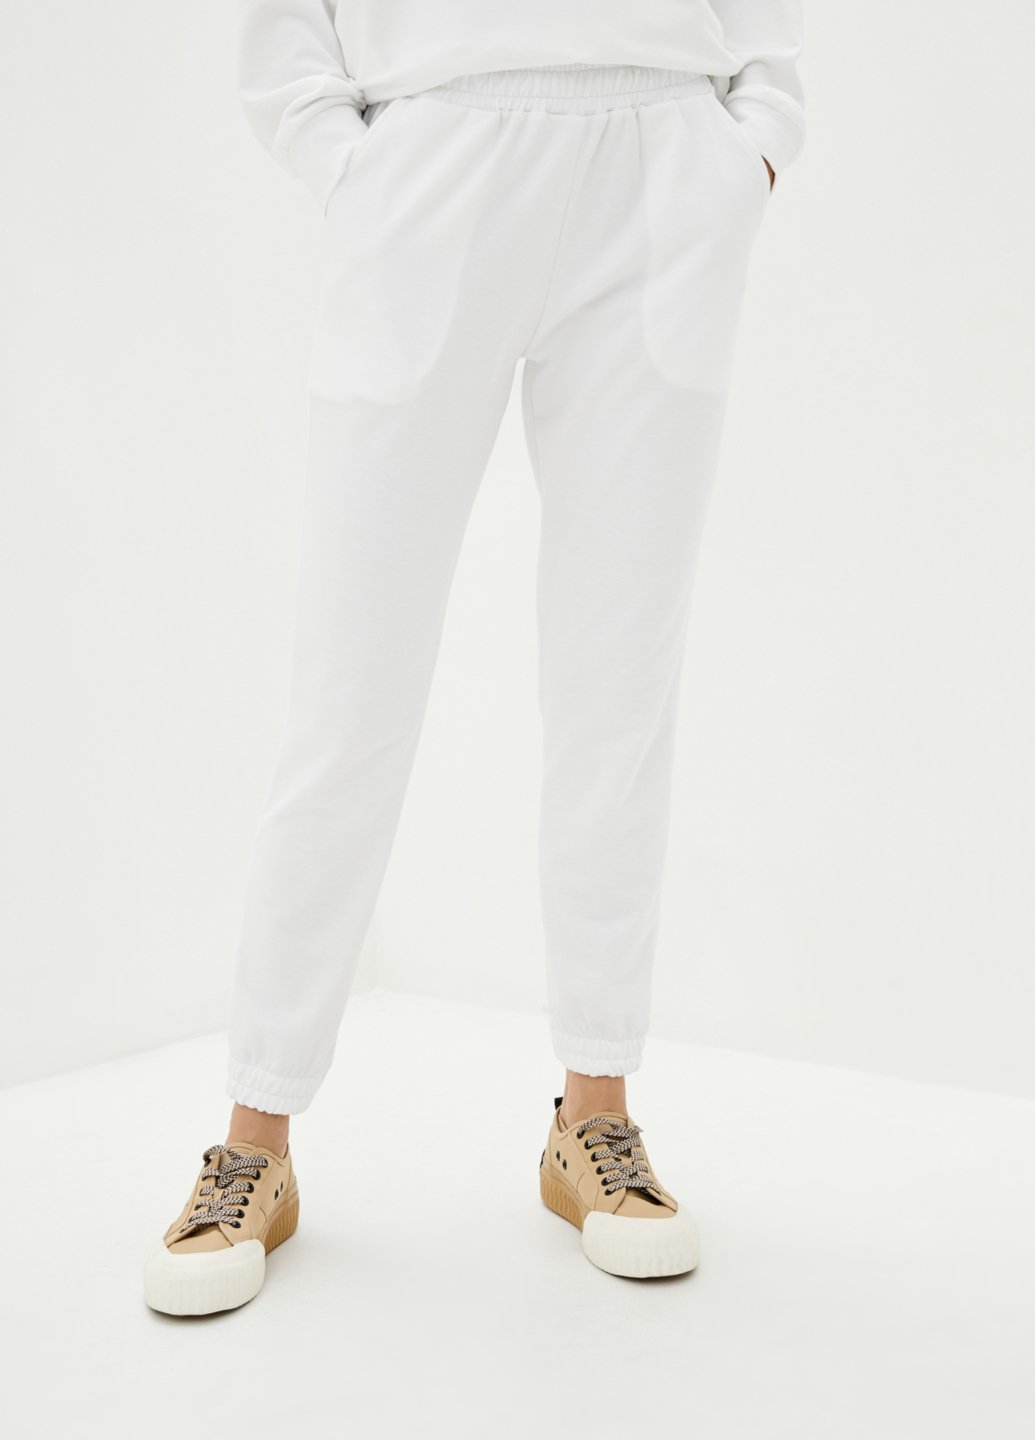 Купити Спортивні штани жіночі Merlini Латина 600000013 - Білий, 42-44 в інтернет-магазині